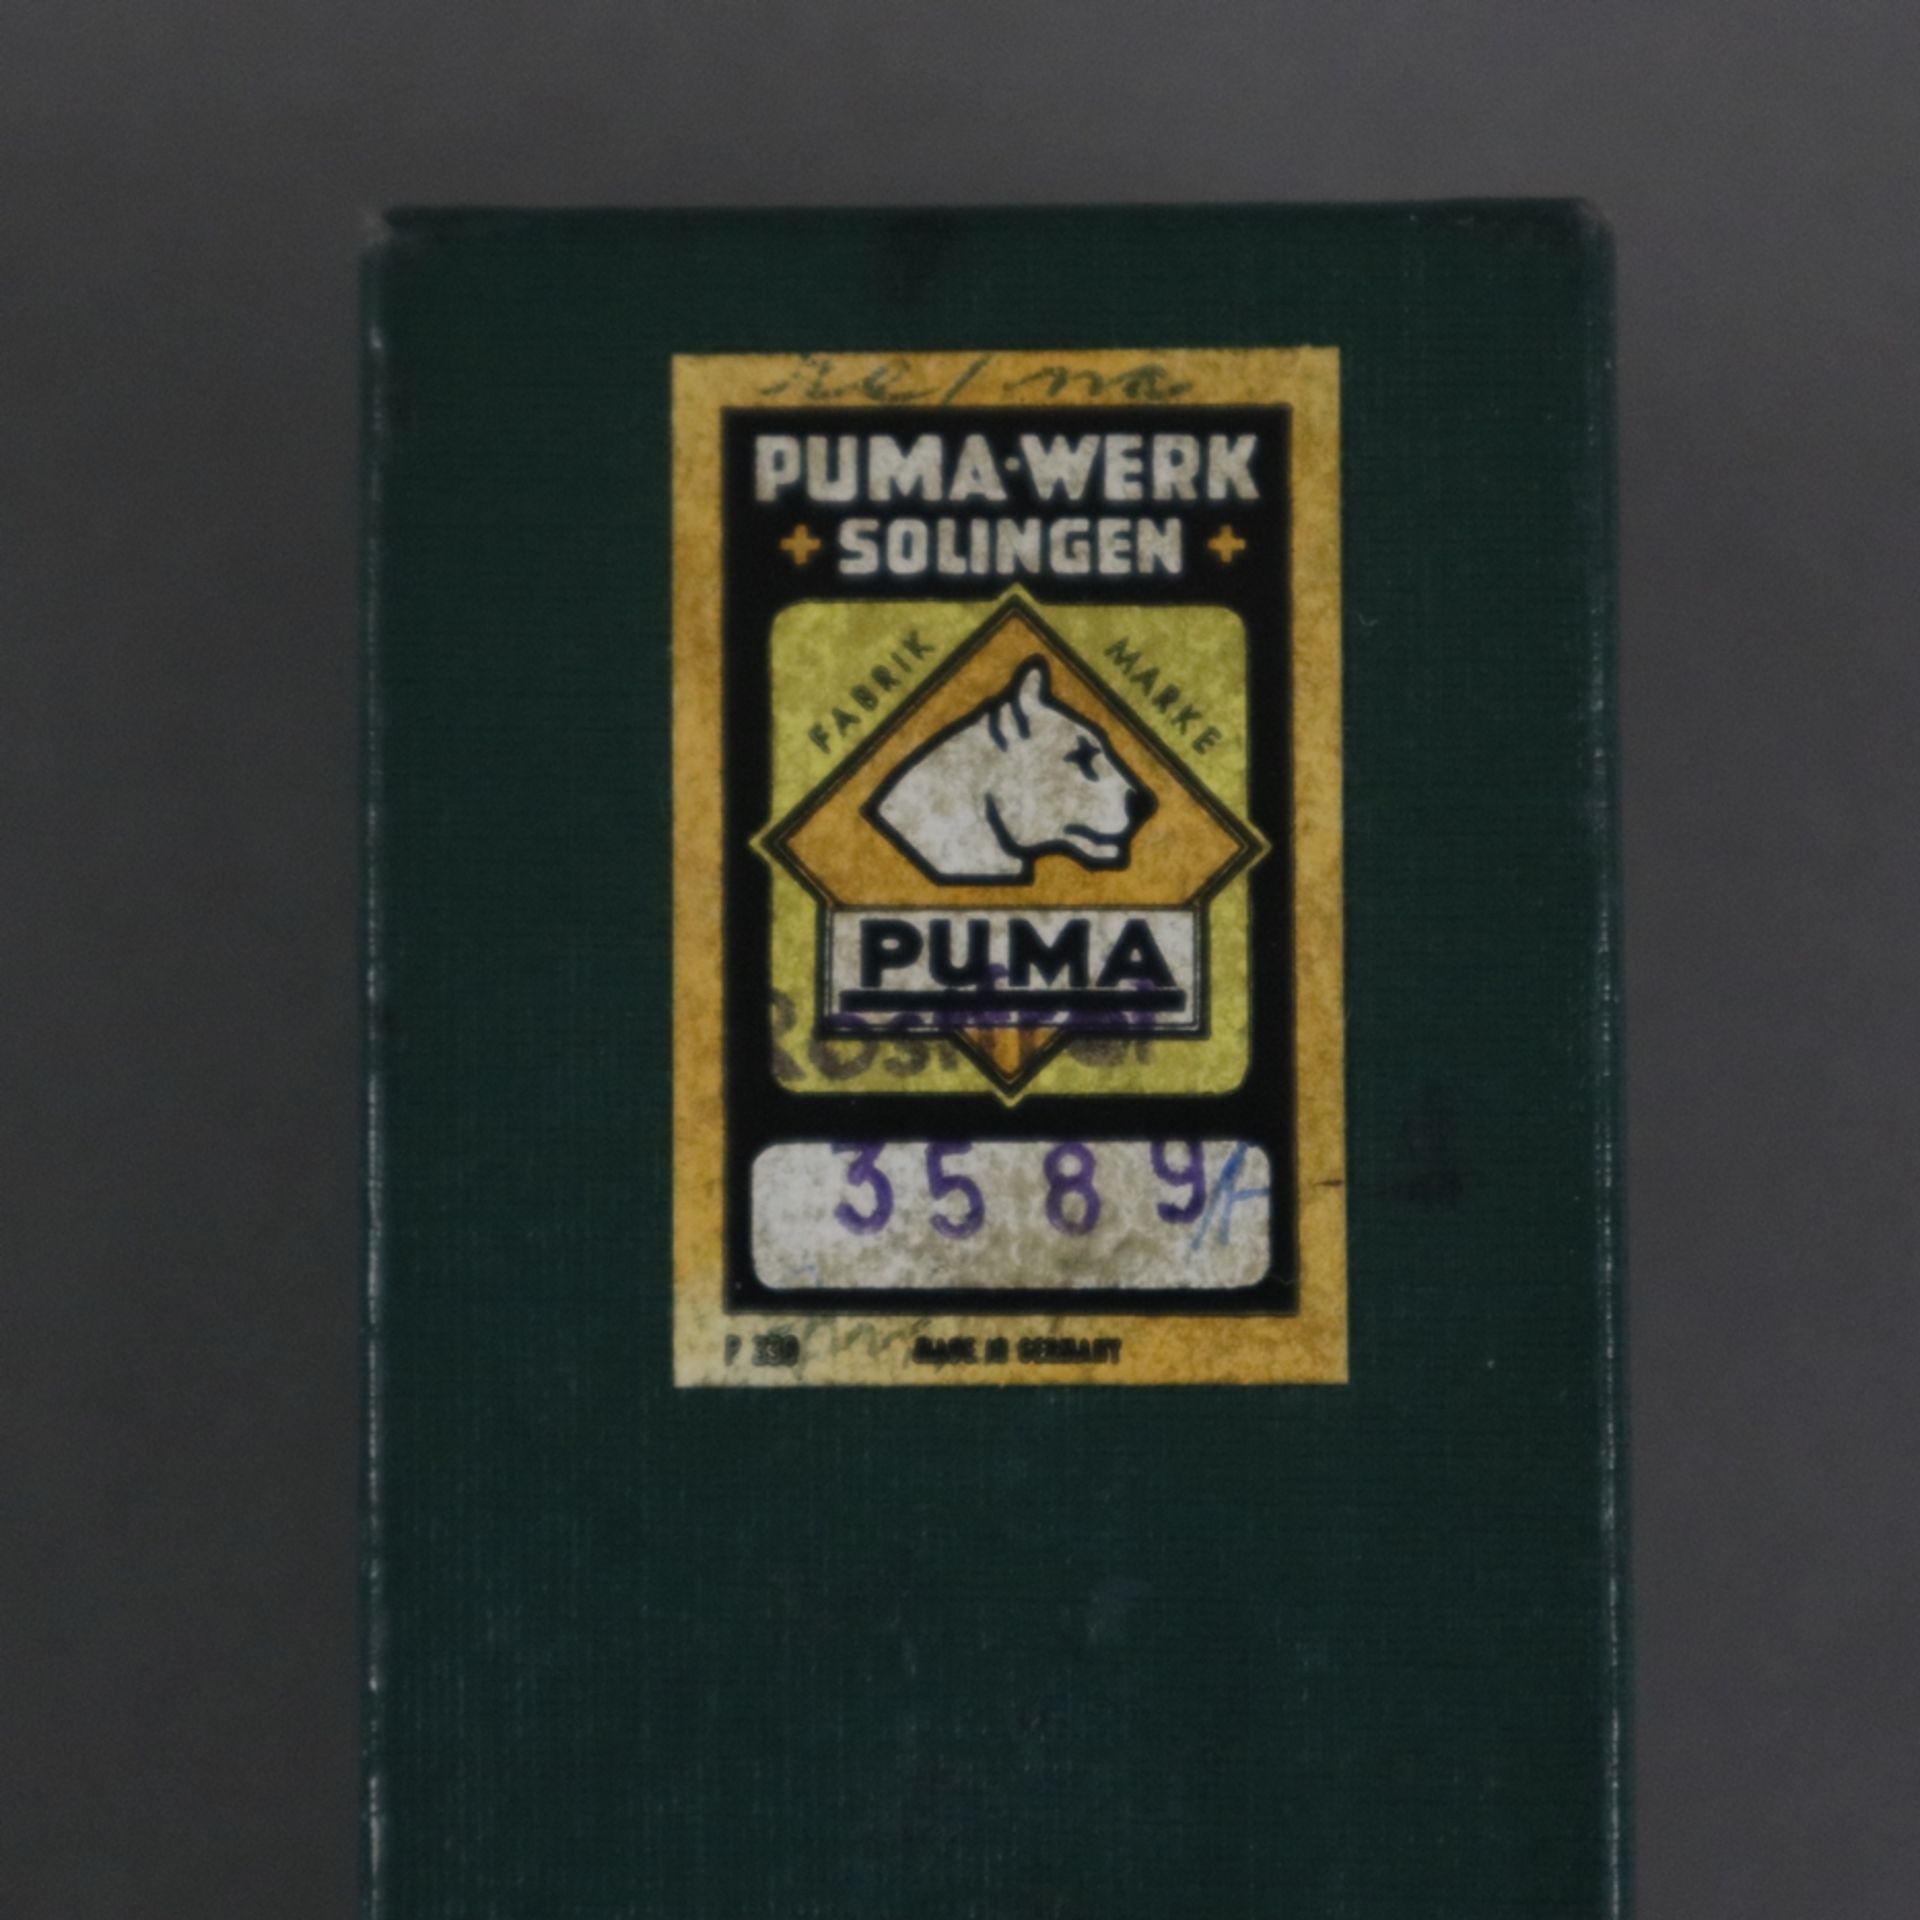 Jagdmesser - Puma, Jagd-Nicker, INOX - Klinge, Best.Nr. 3589, Klingenlänge ca. 12 cm, genieteter Hi - Bild 6 aus 7